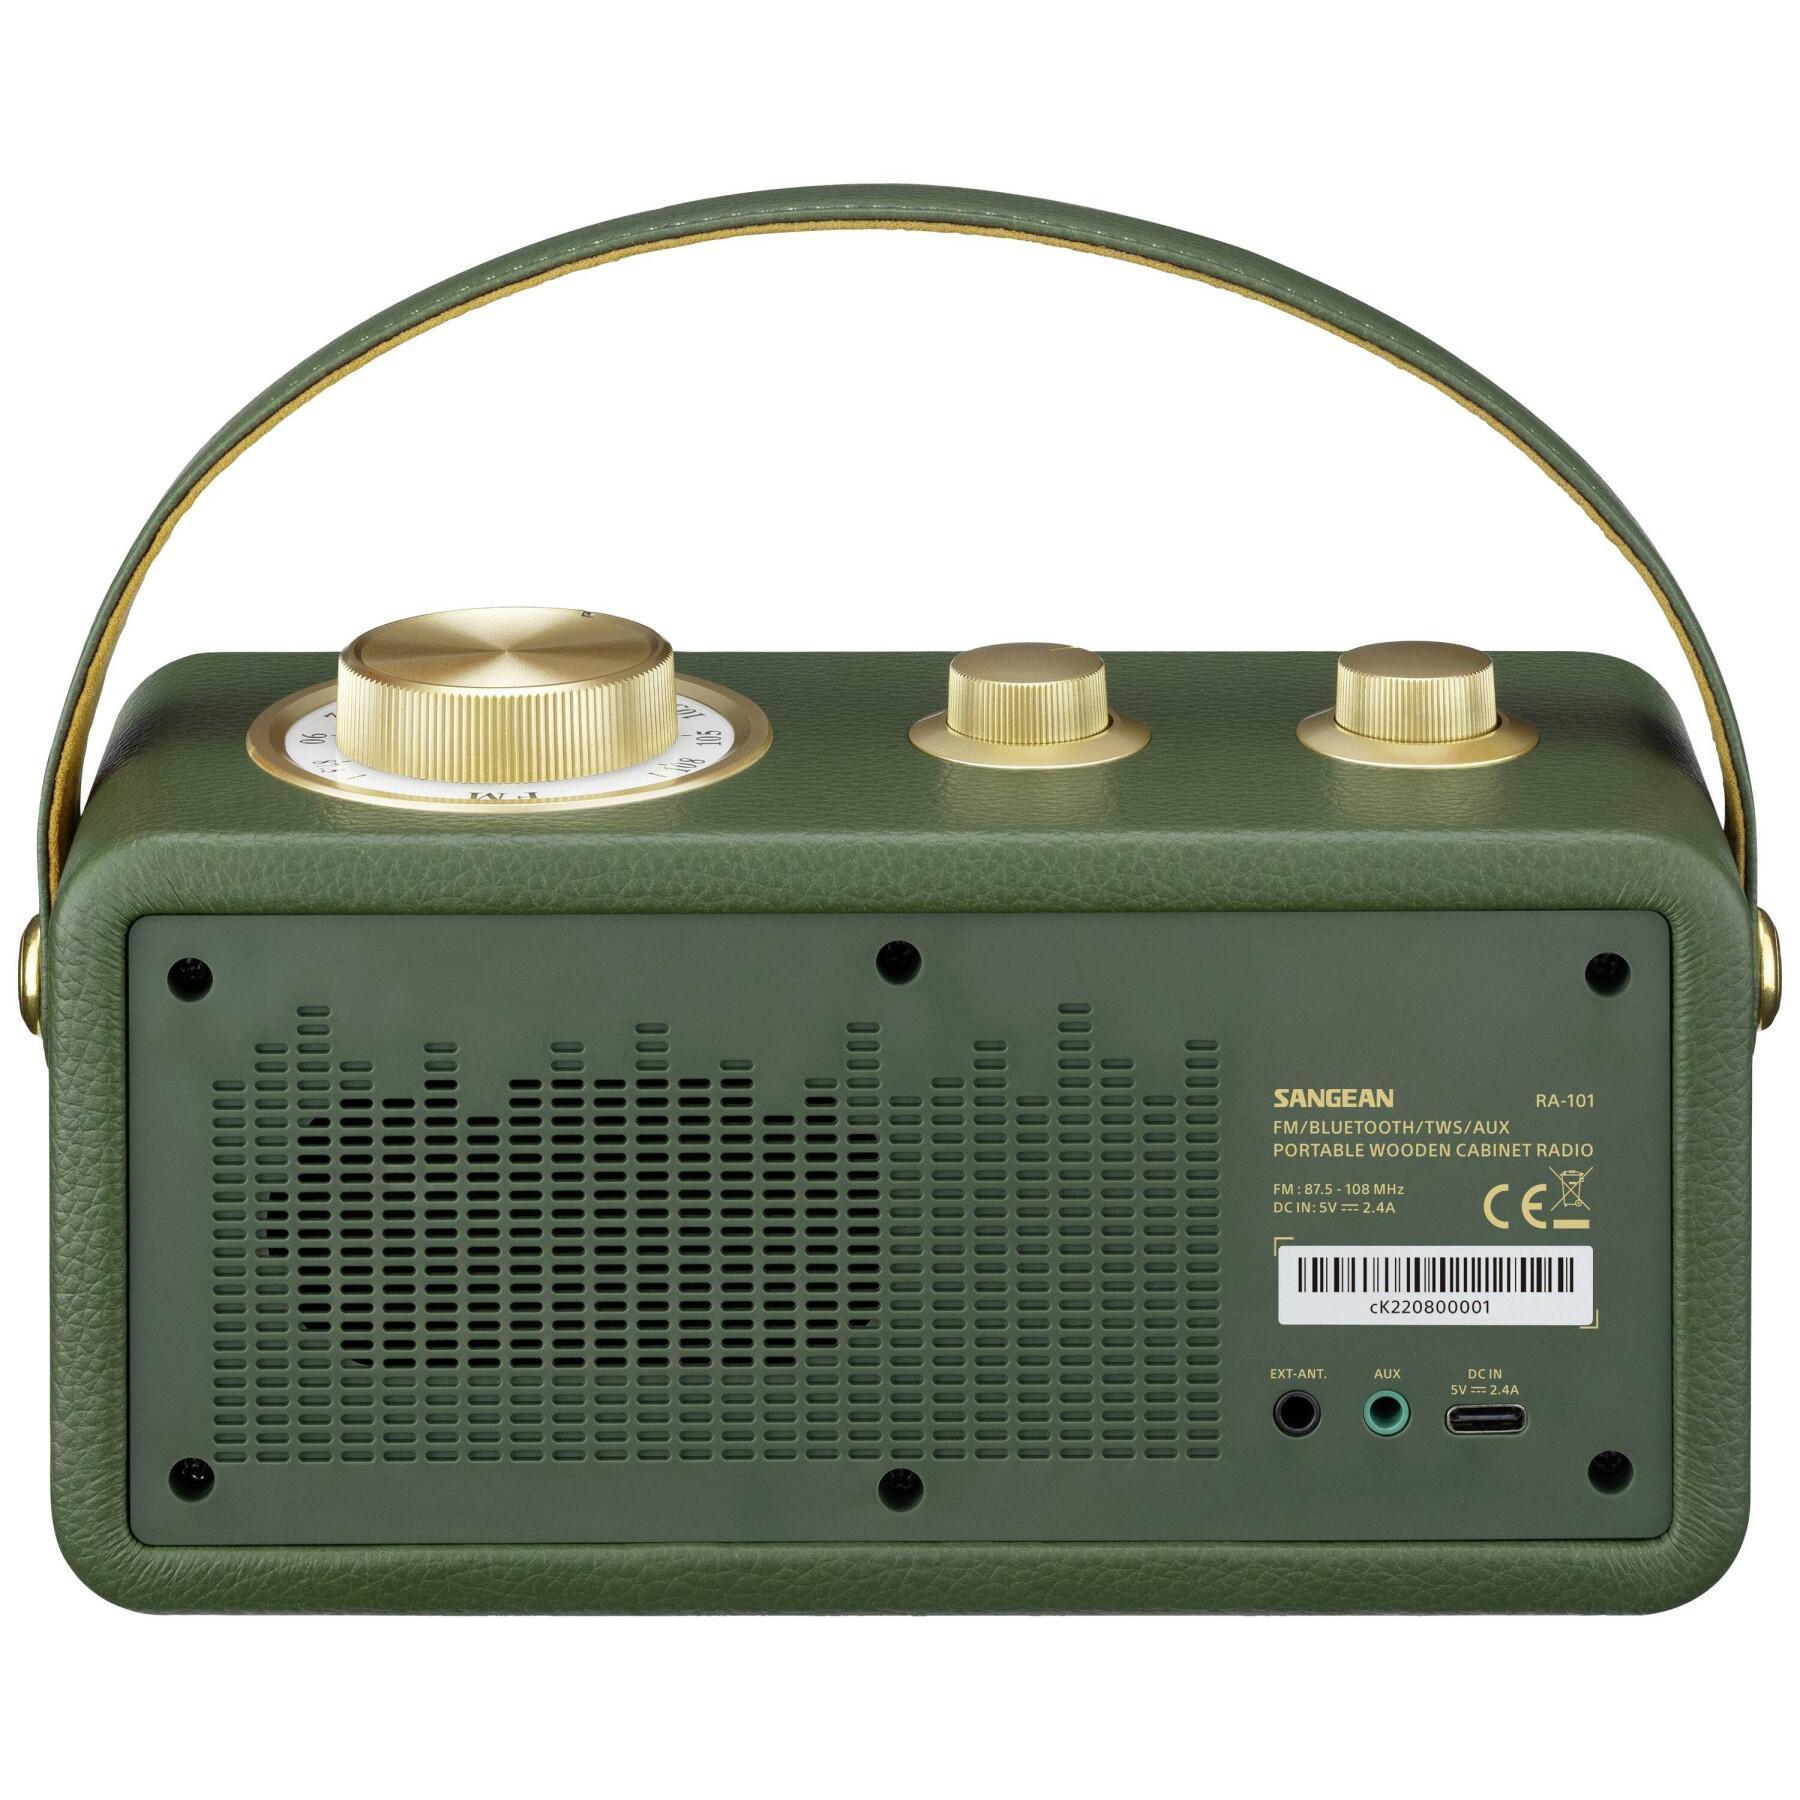 Radio sans fil FM Bluetooth, AUX rechargeable Sangean RA-101